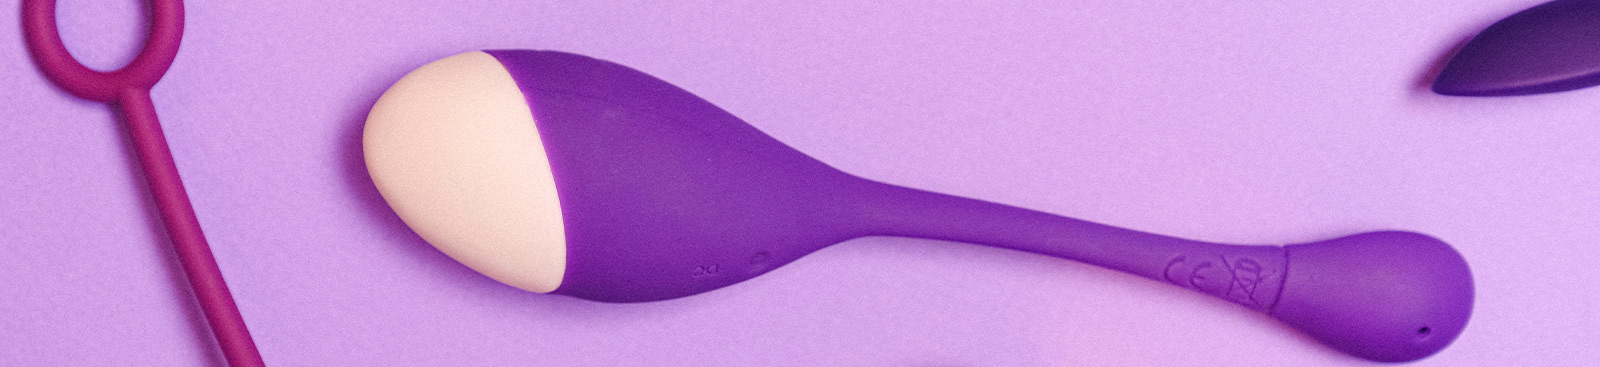 SexShop y Tienda Online donde comprar juguetes eróticos y lenceria sexy 